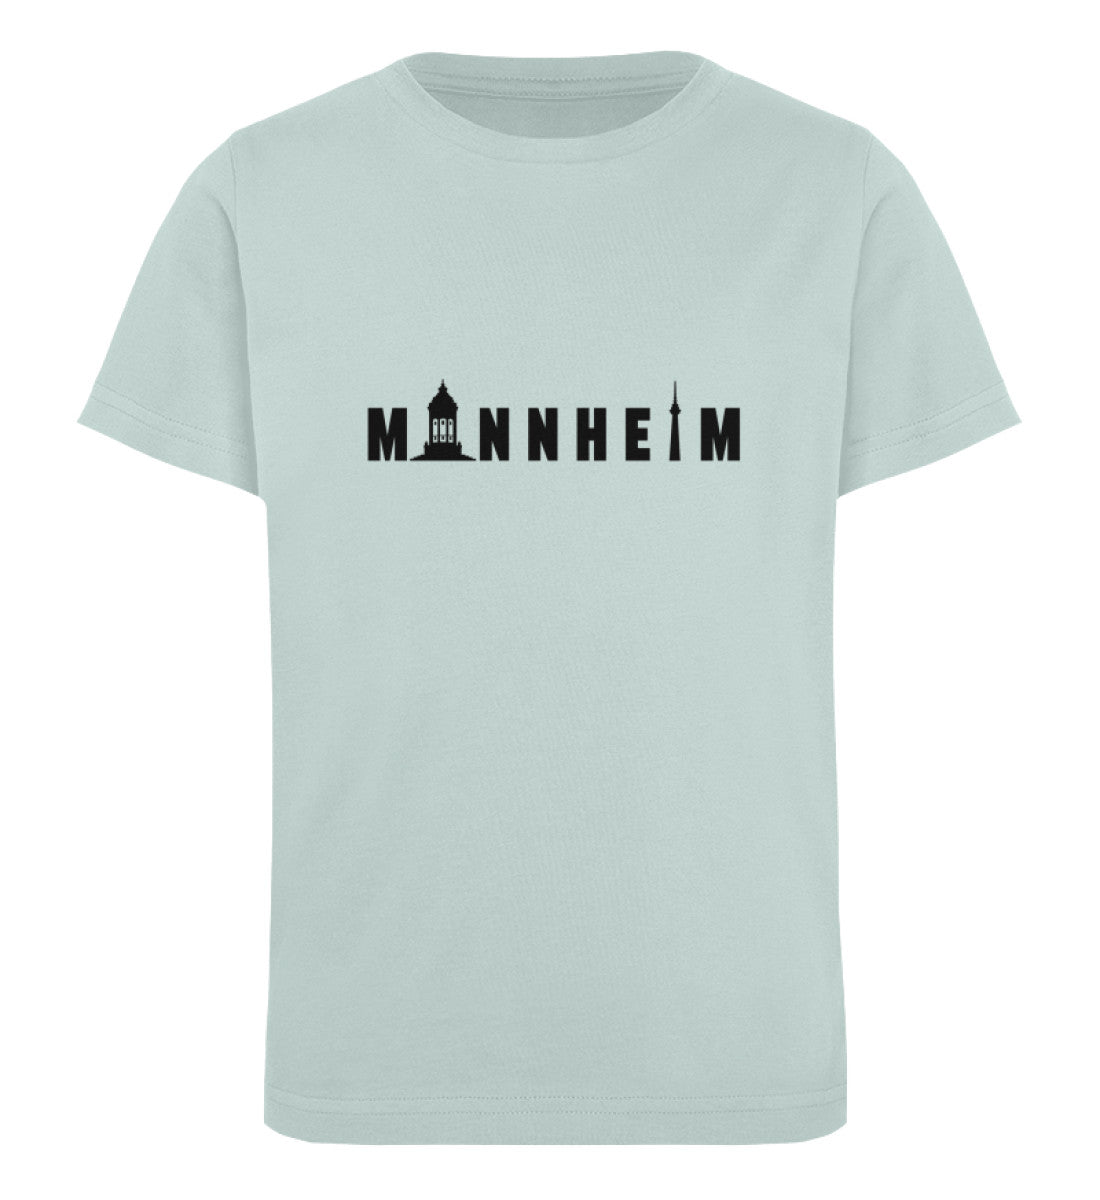 Mannheim Kids Organic Shirt - talejo